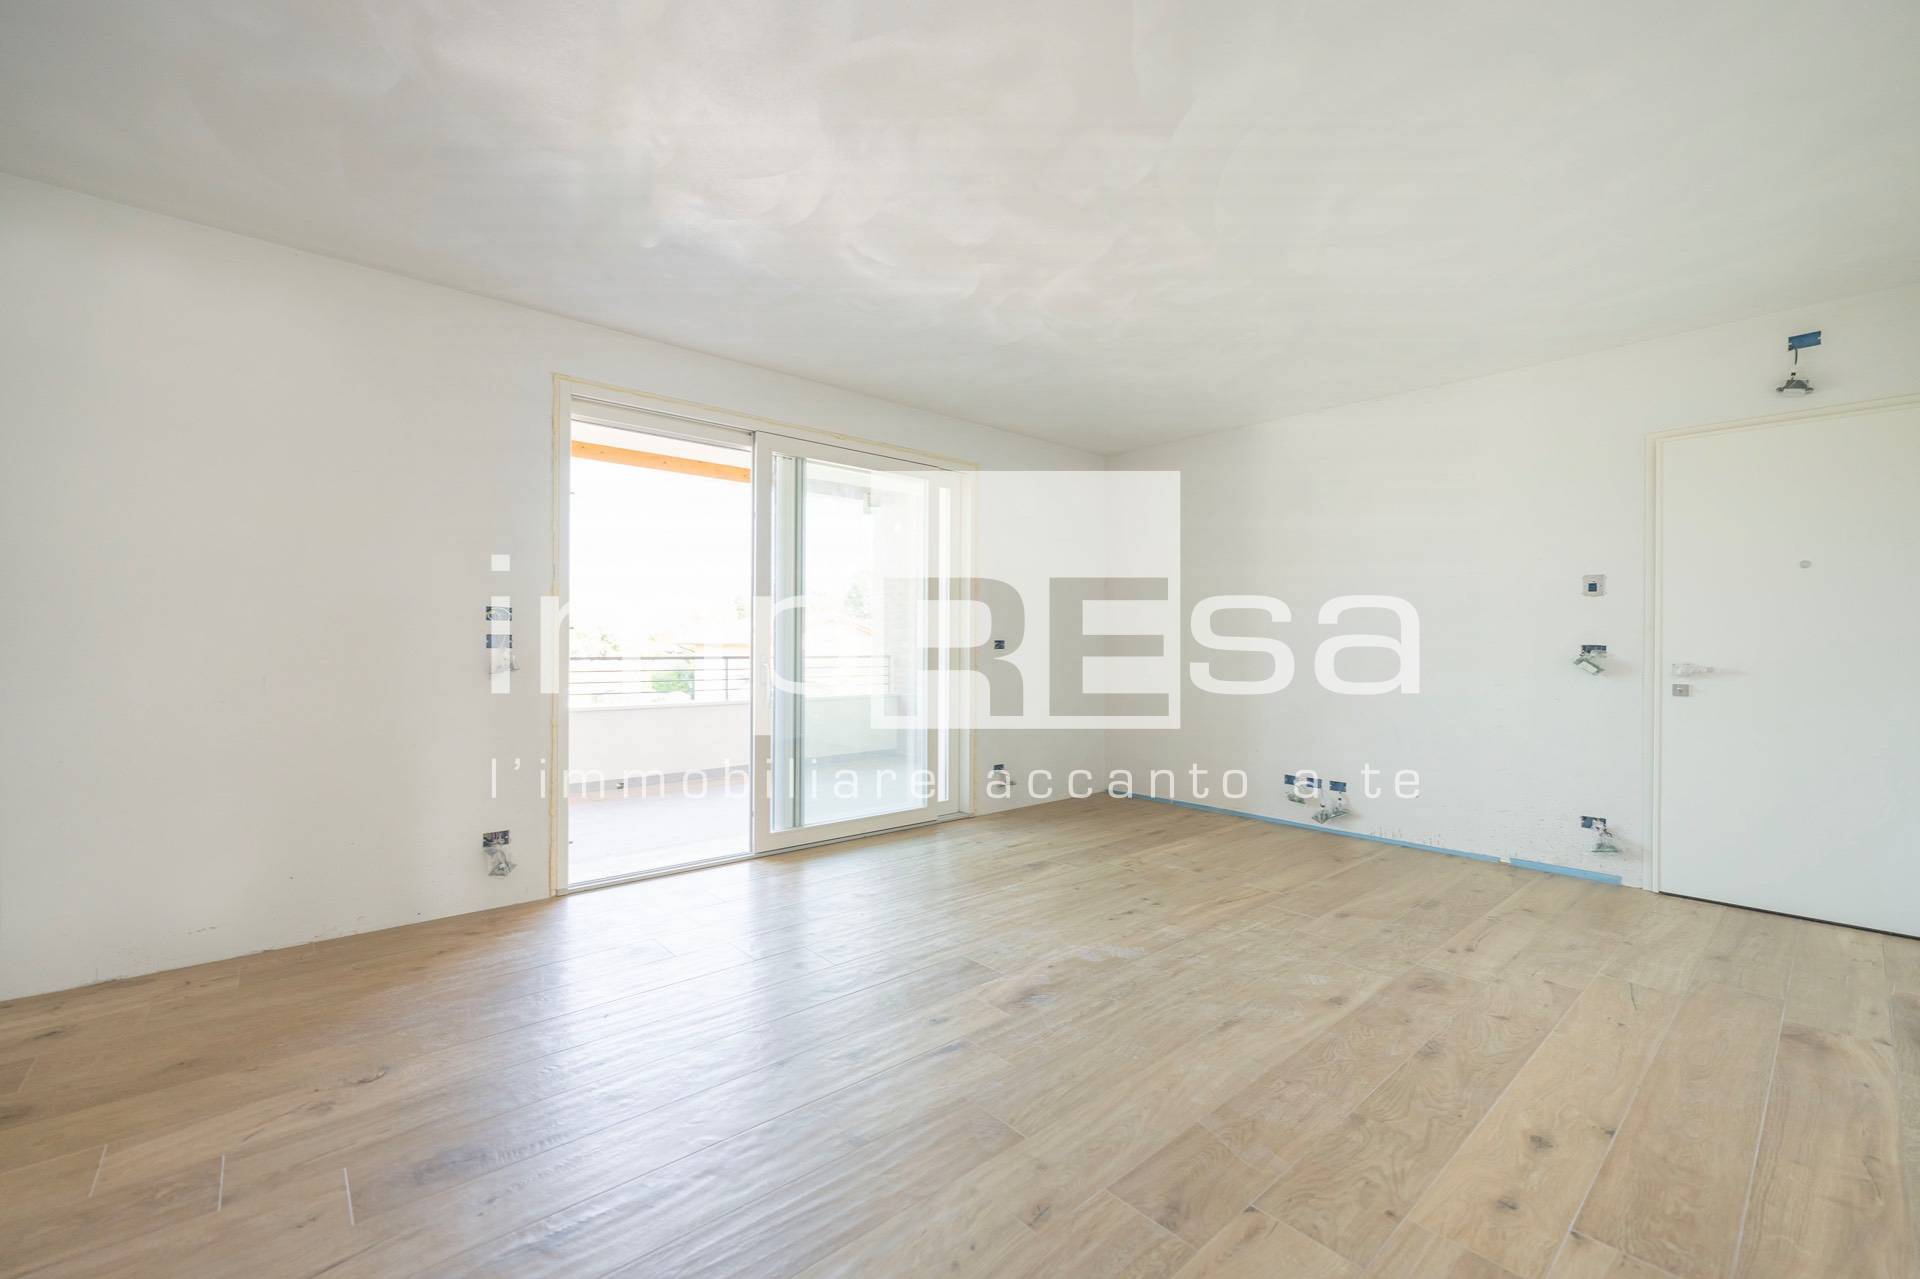 Appartamento in vendita a Porcia, 6 locali, prezzo € 340.000 | PortaleAgenzieImmobiliari.it